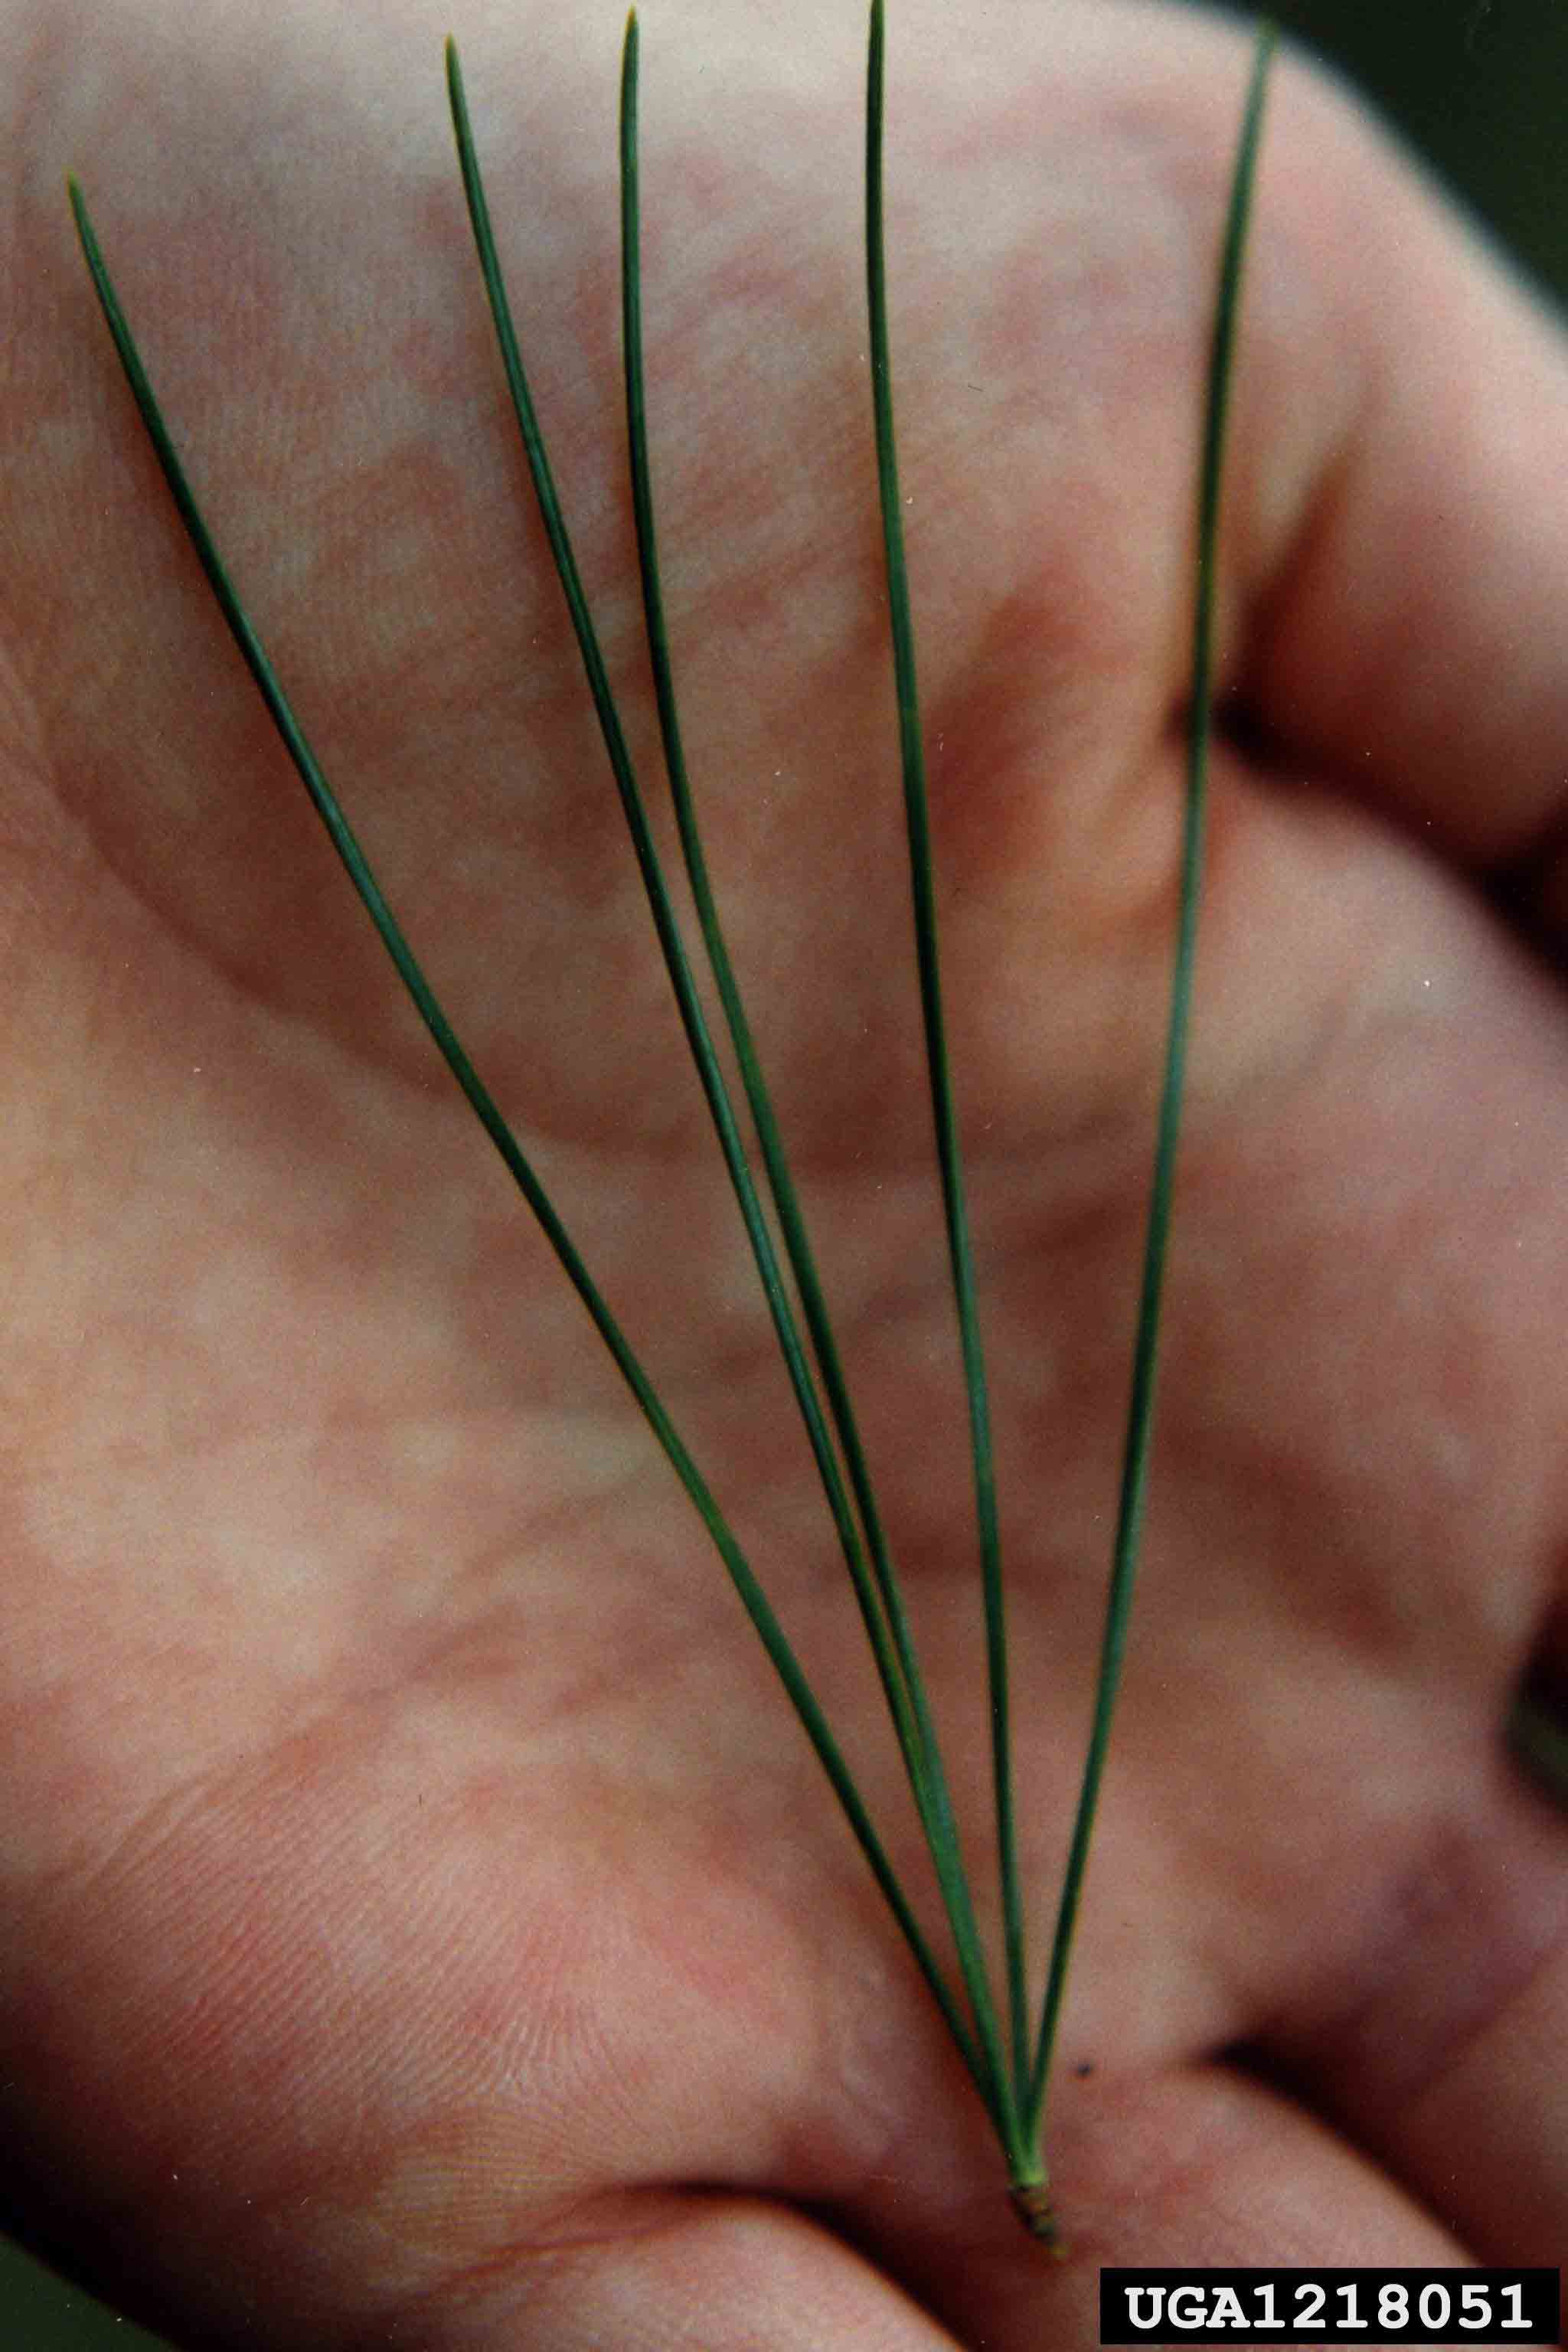 Eastern white pine needles, 3"-5" long